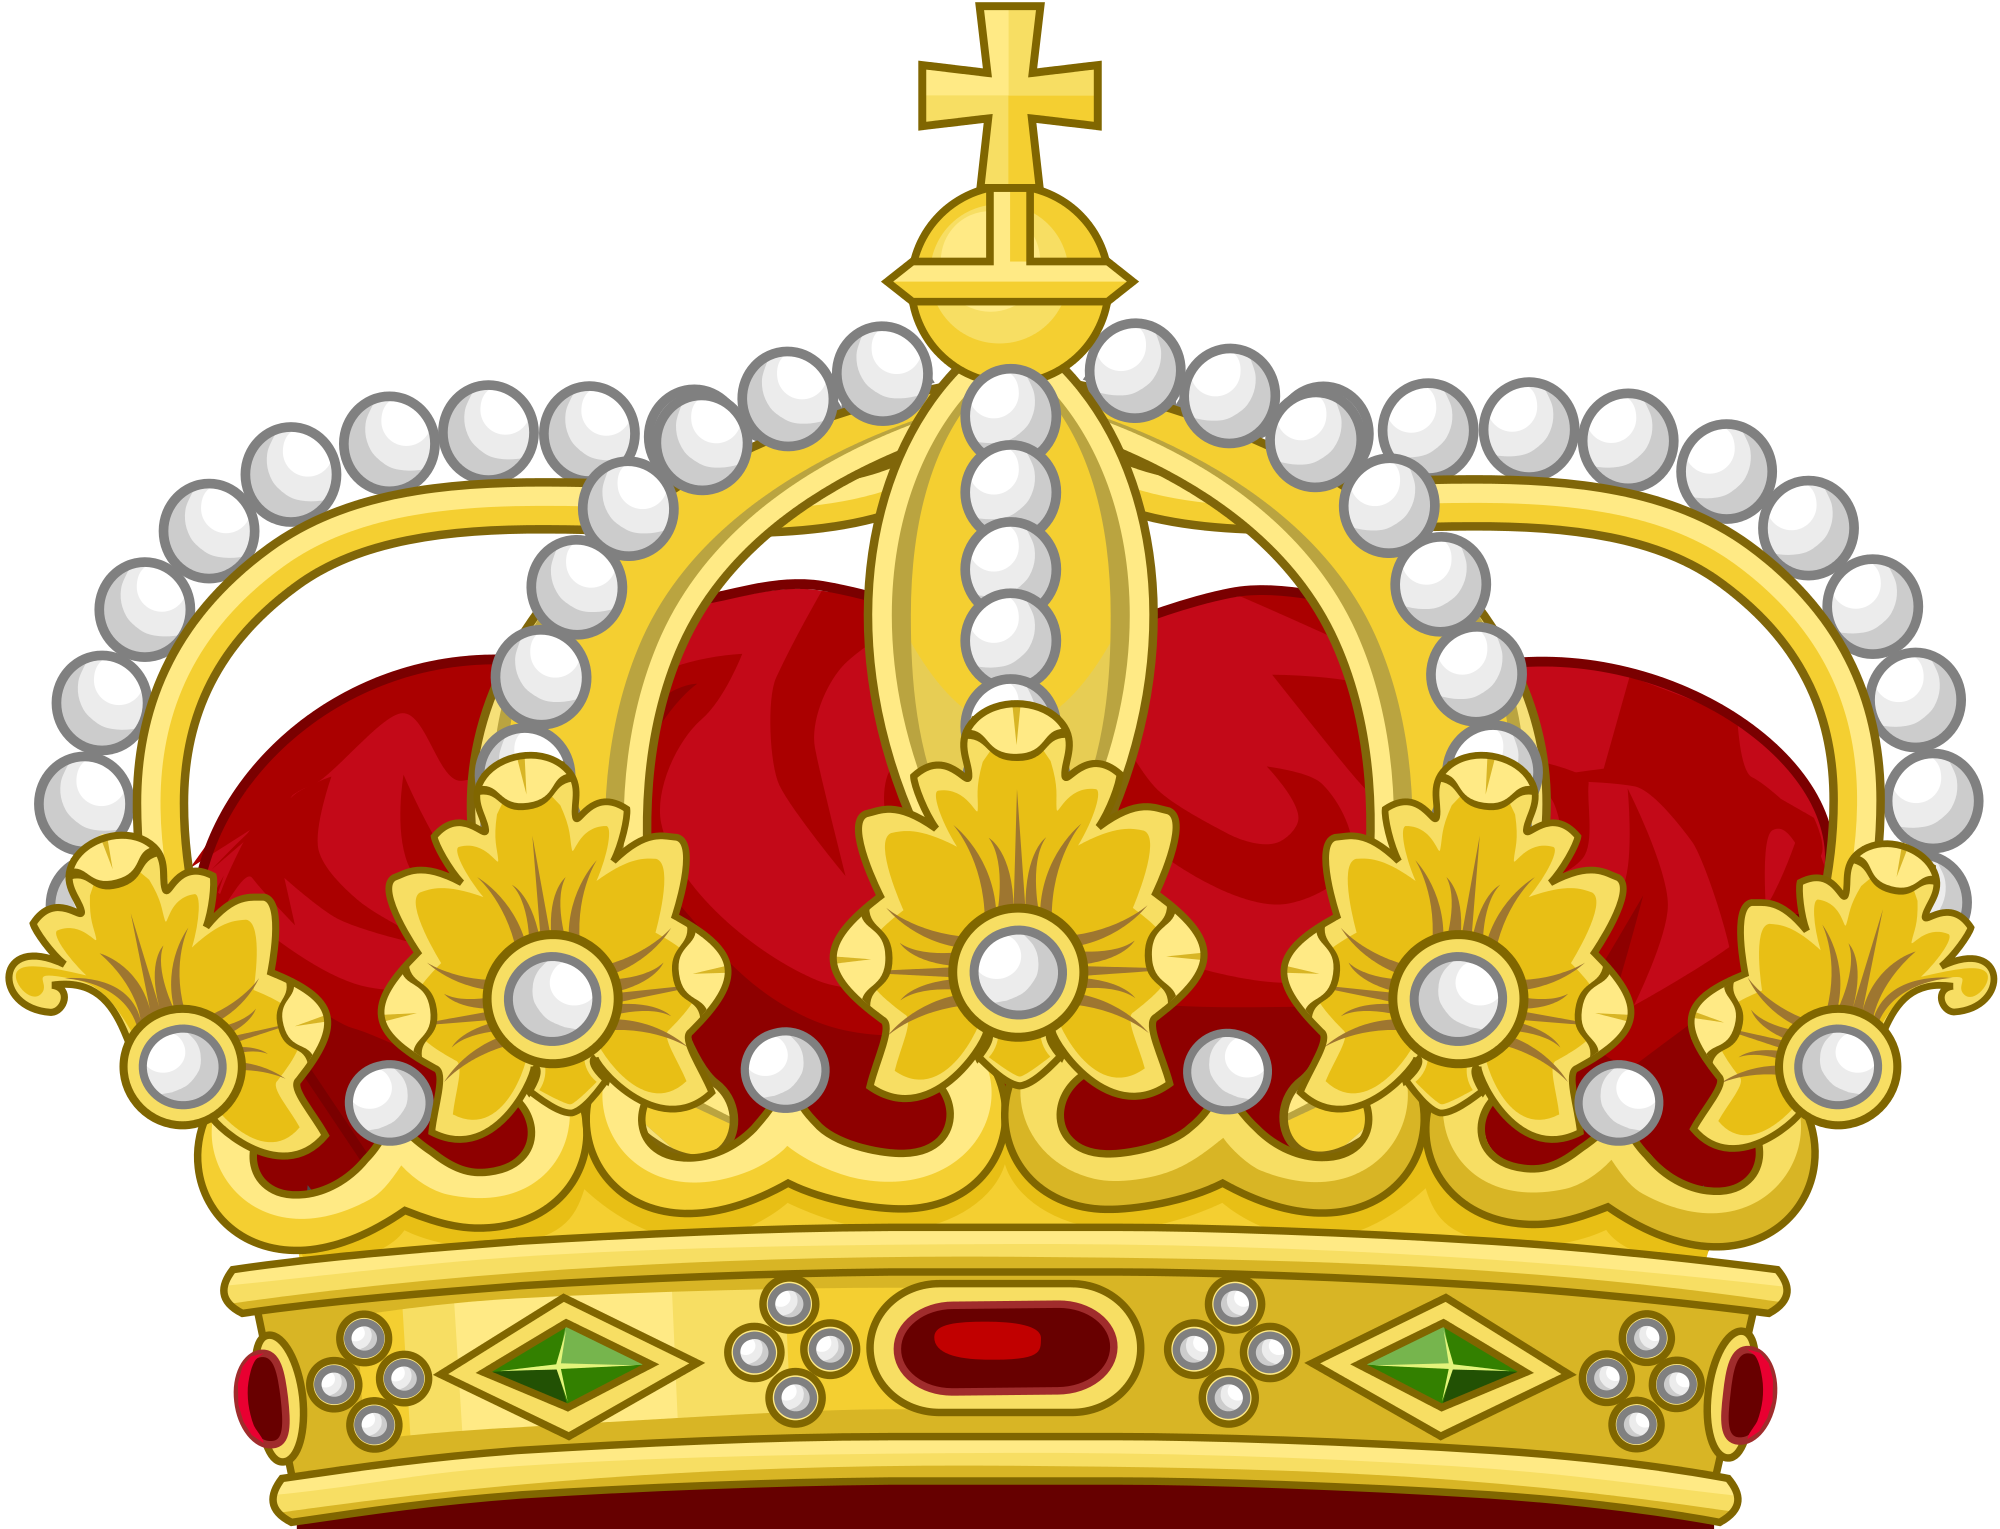 King of Amsnorth crown png